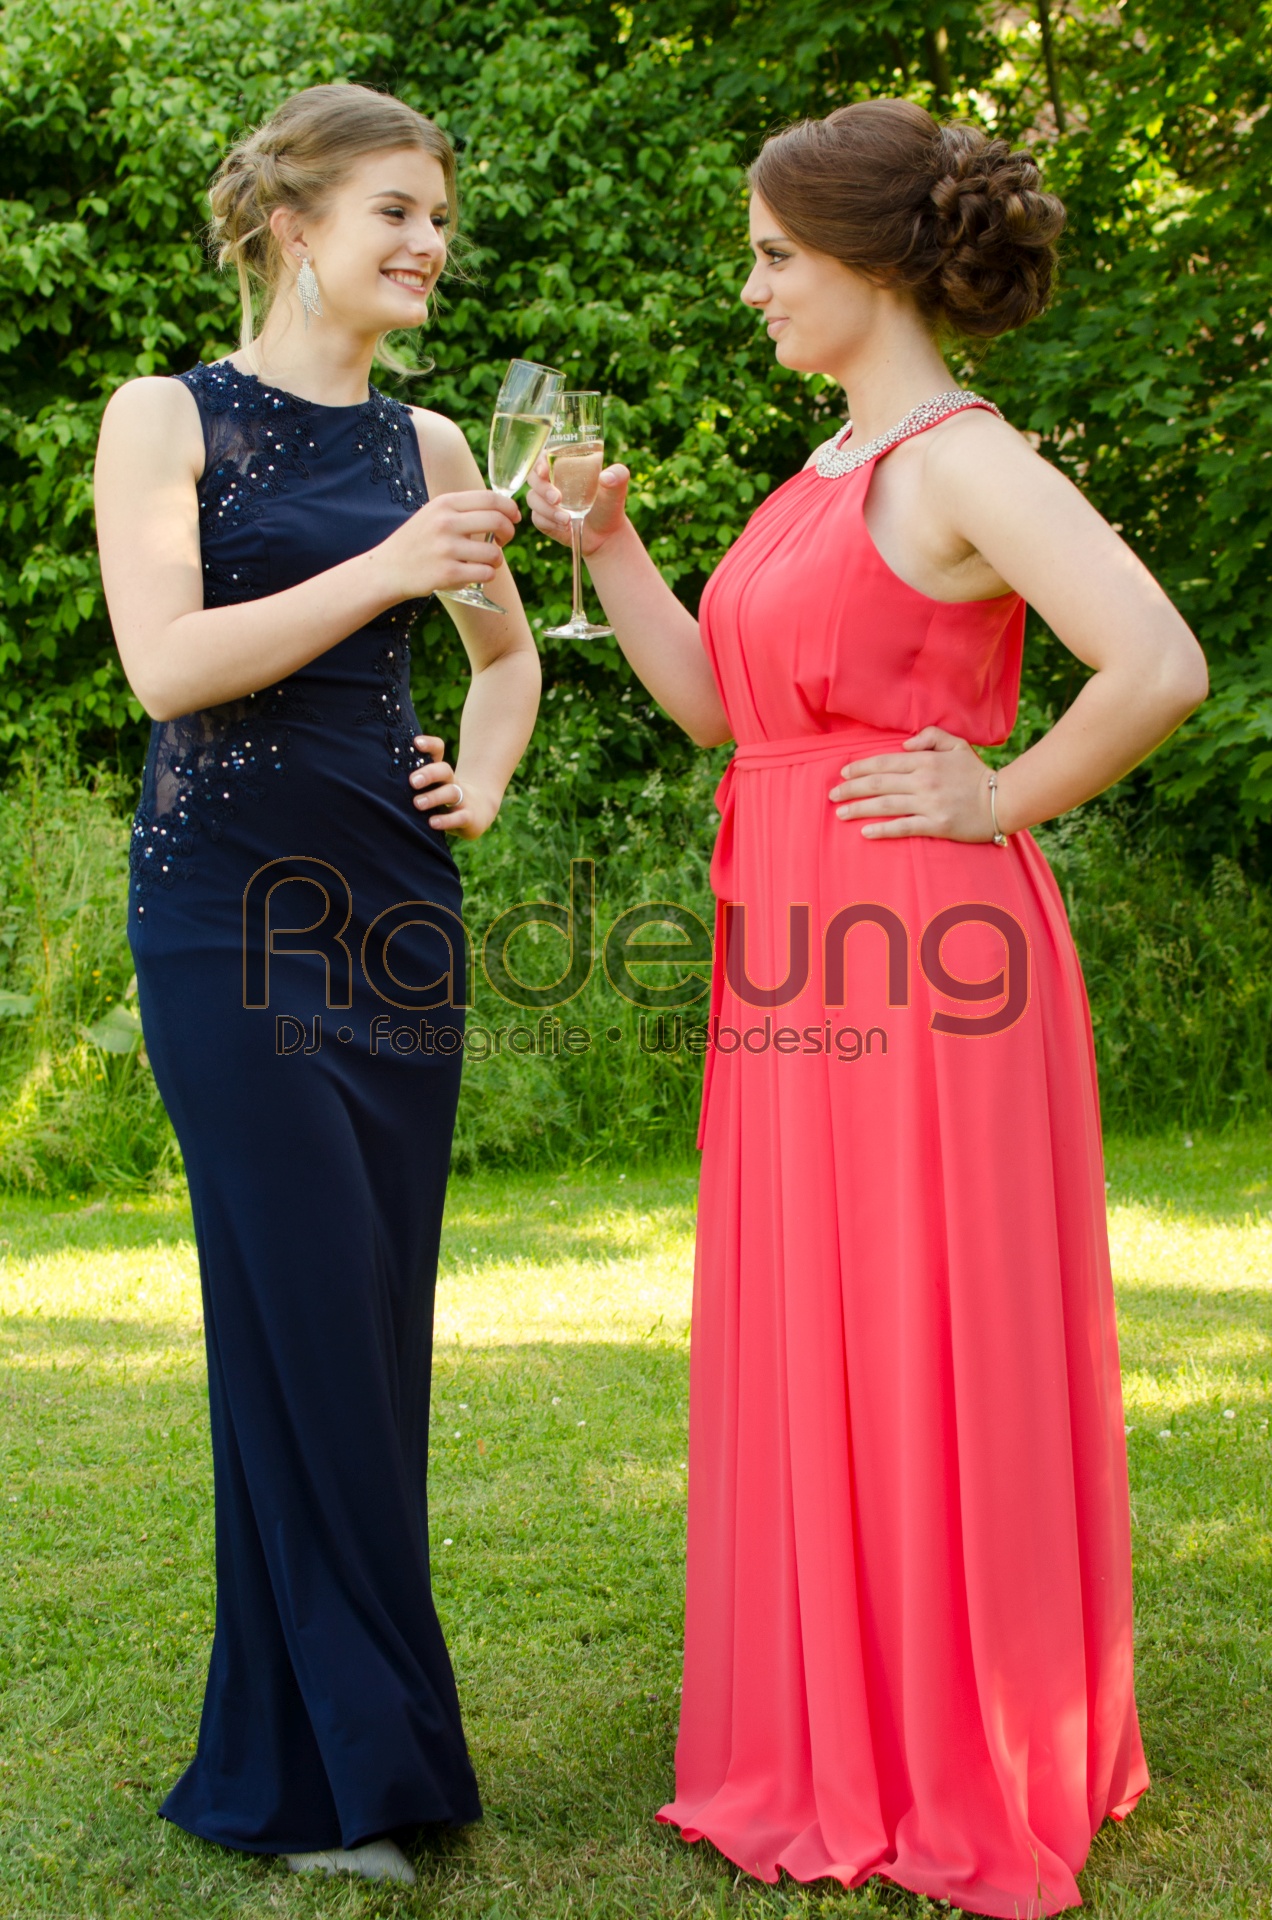 Zwei junge Damen stoßen auf ihrer Abschlussfeier miteinander an.